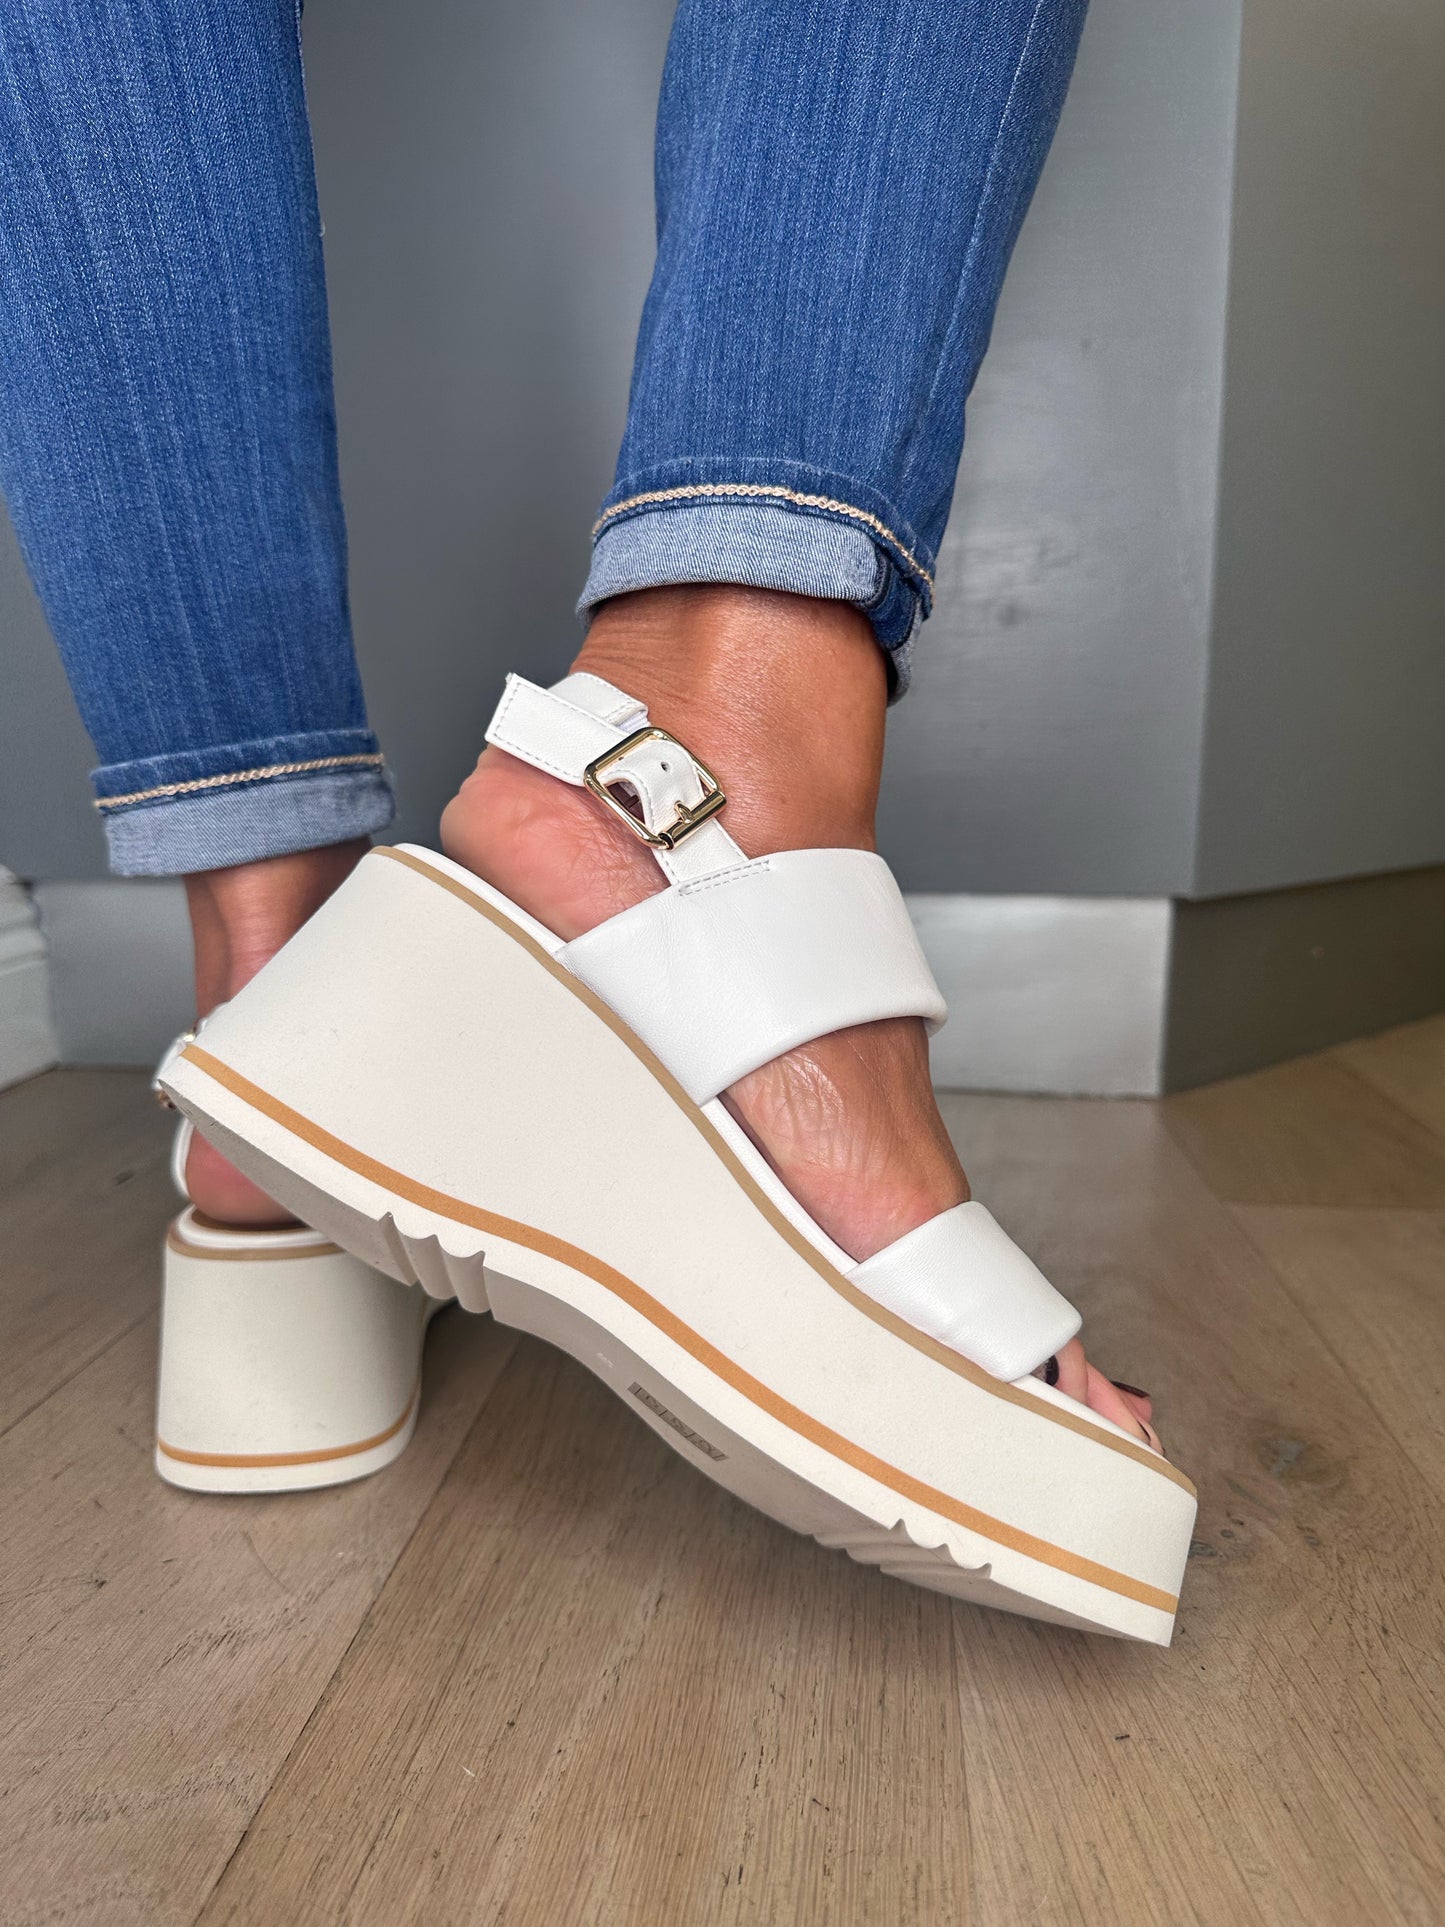 Repo -  White 2 Strap Sporty Wedge Sandal